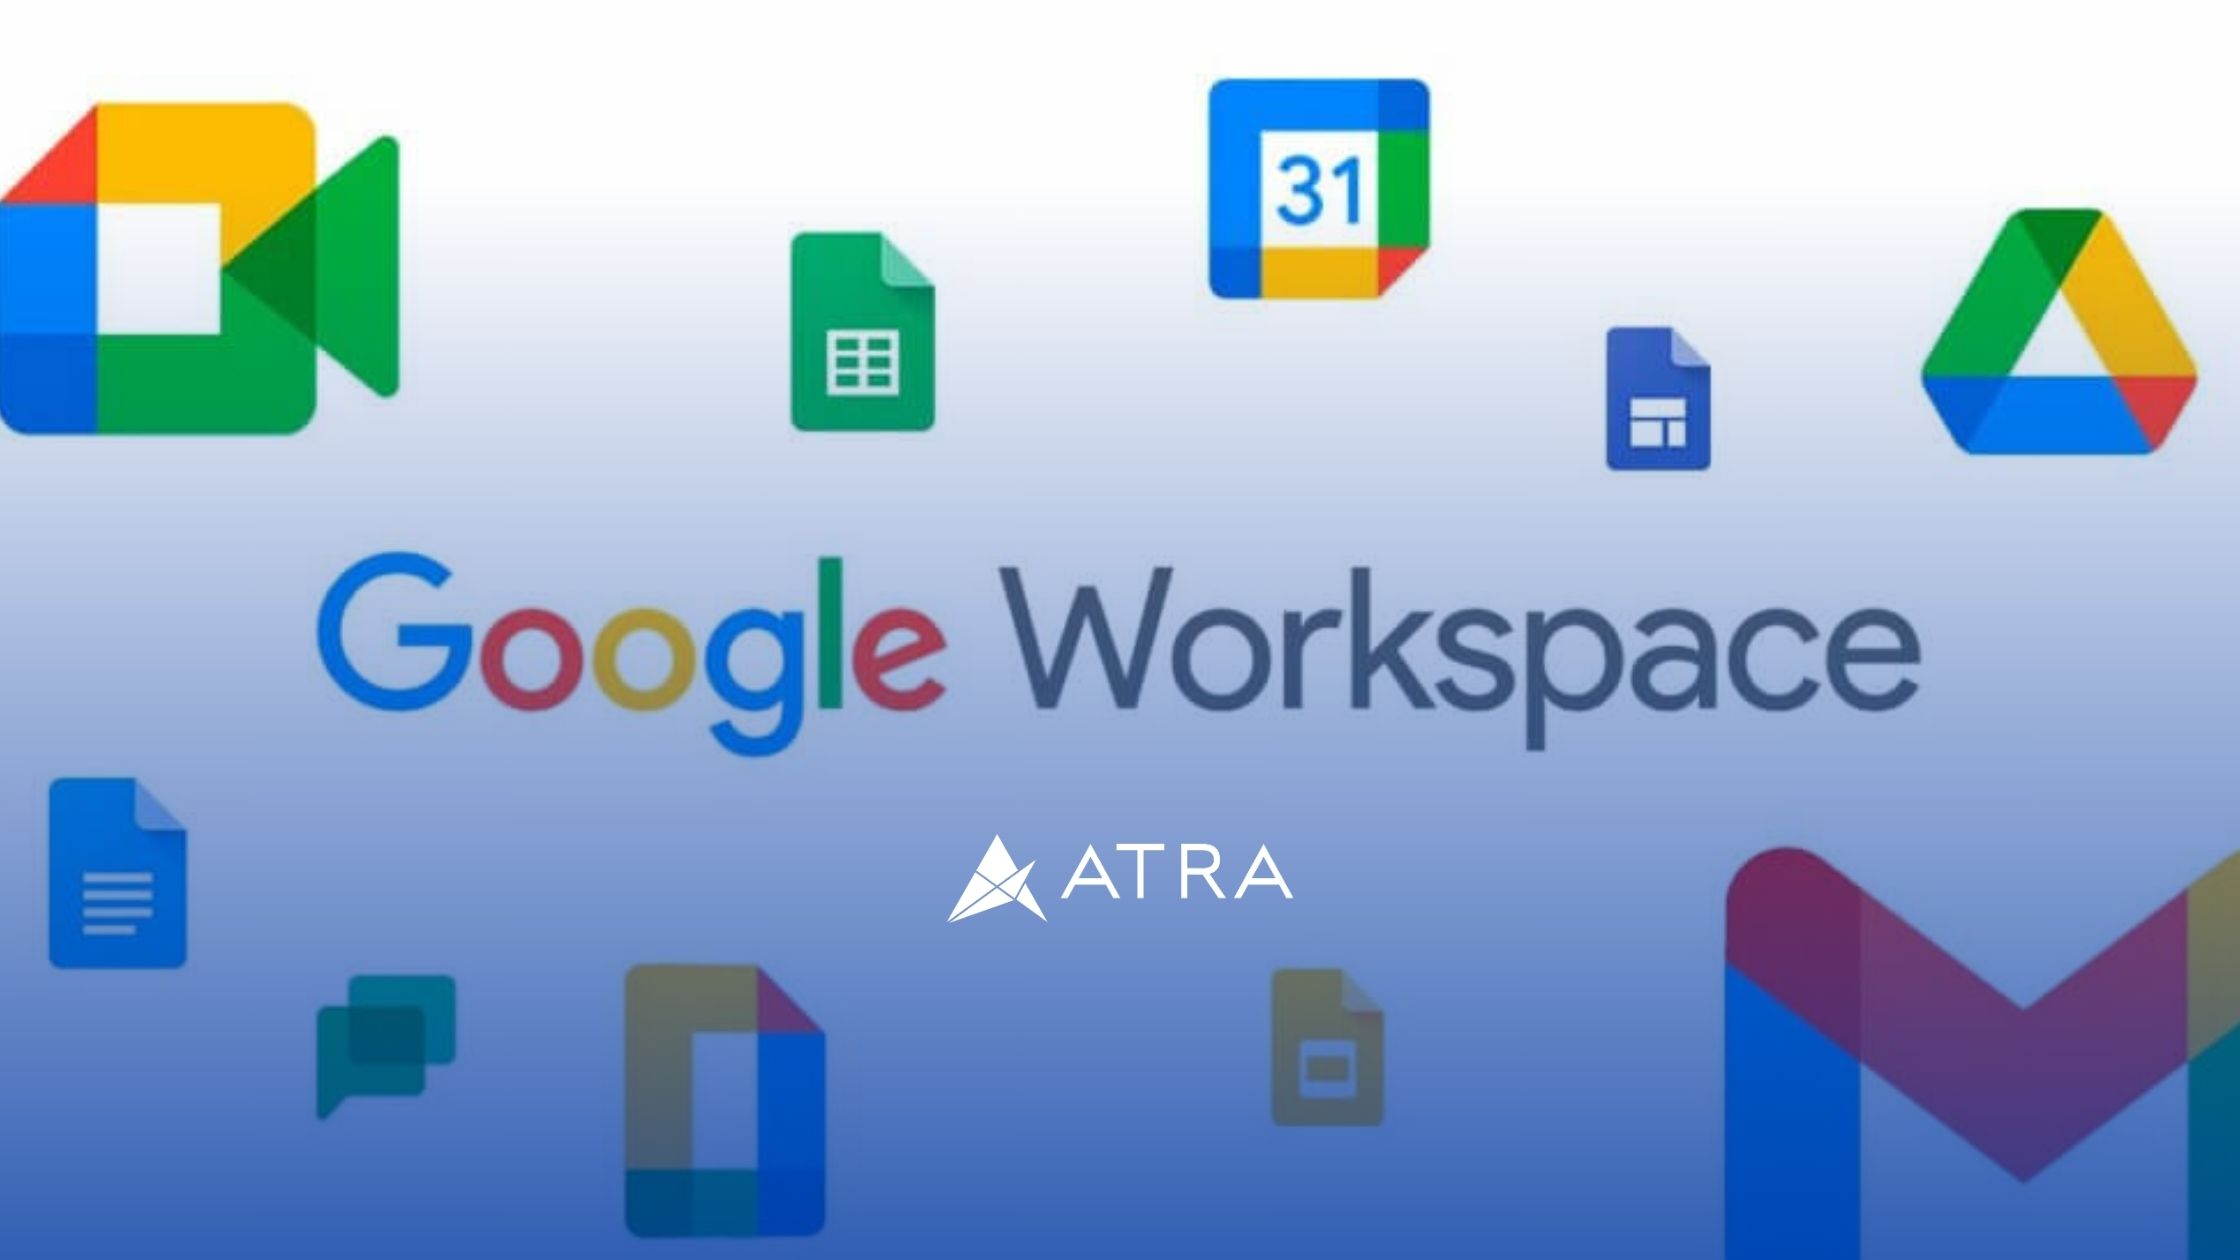 O que é o Google Workspace